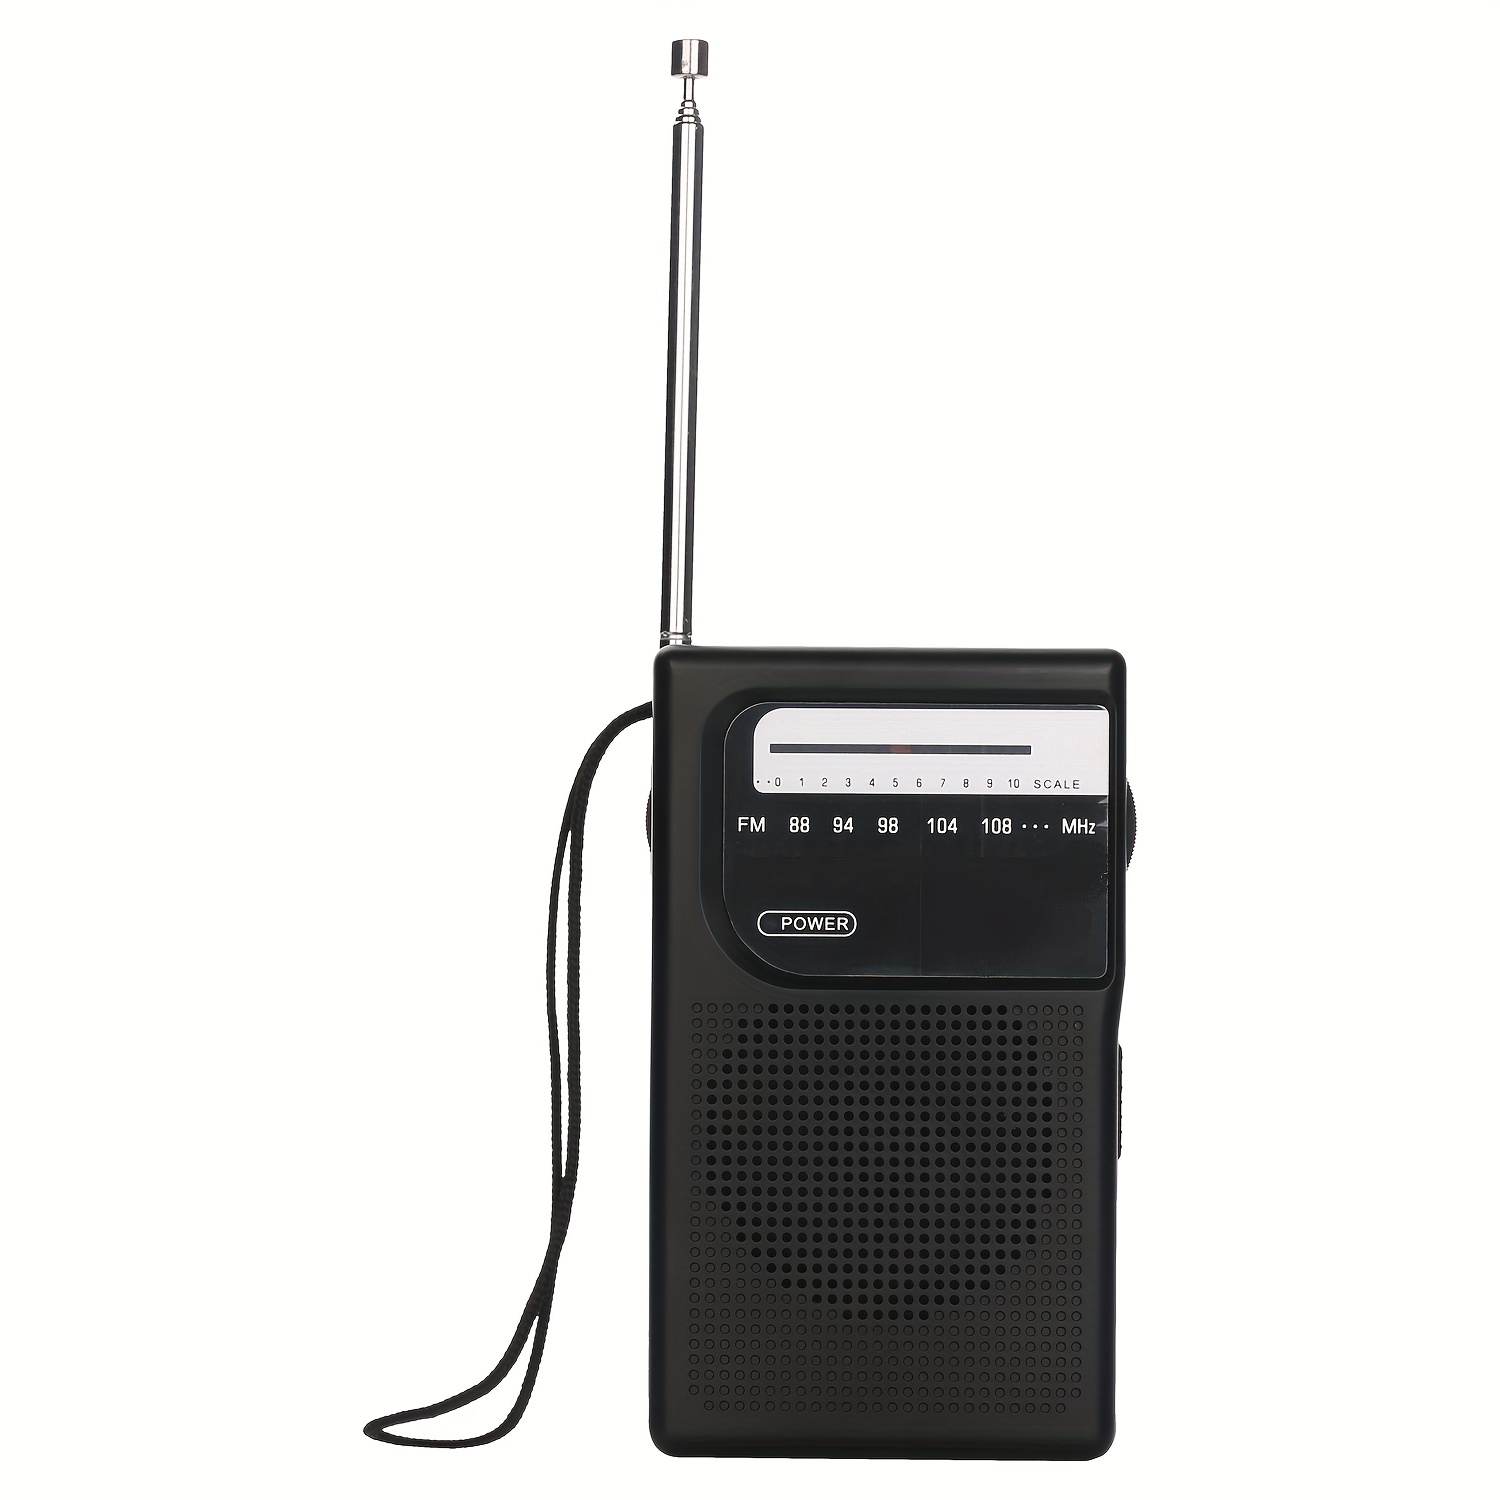 Radio Mini radio estéreo AM FM de bolsillo, portátil, funciona con